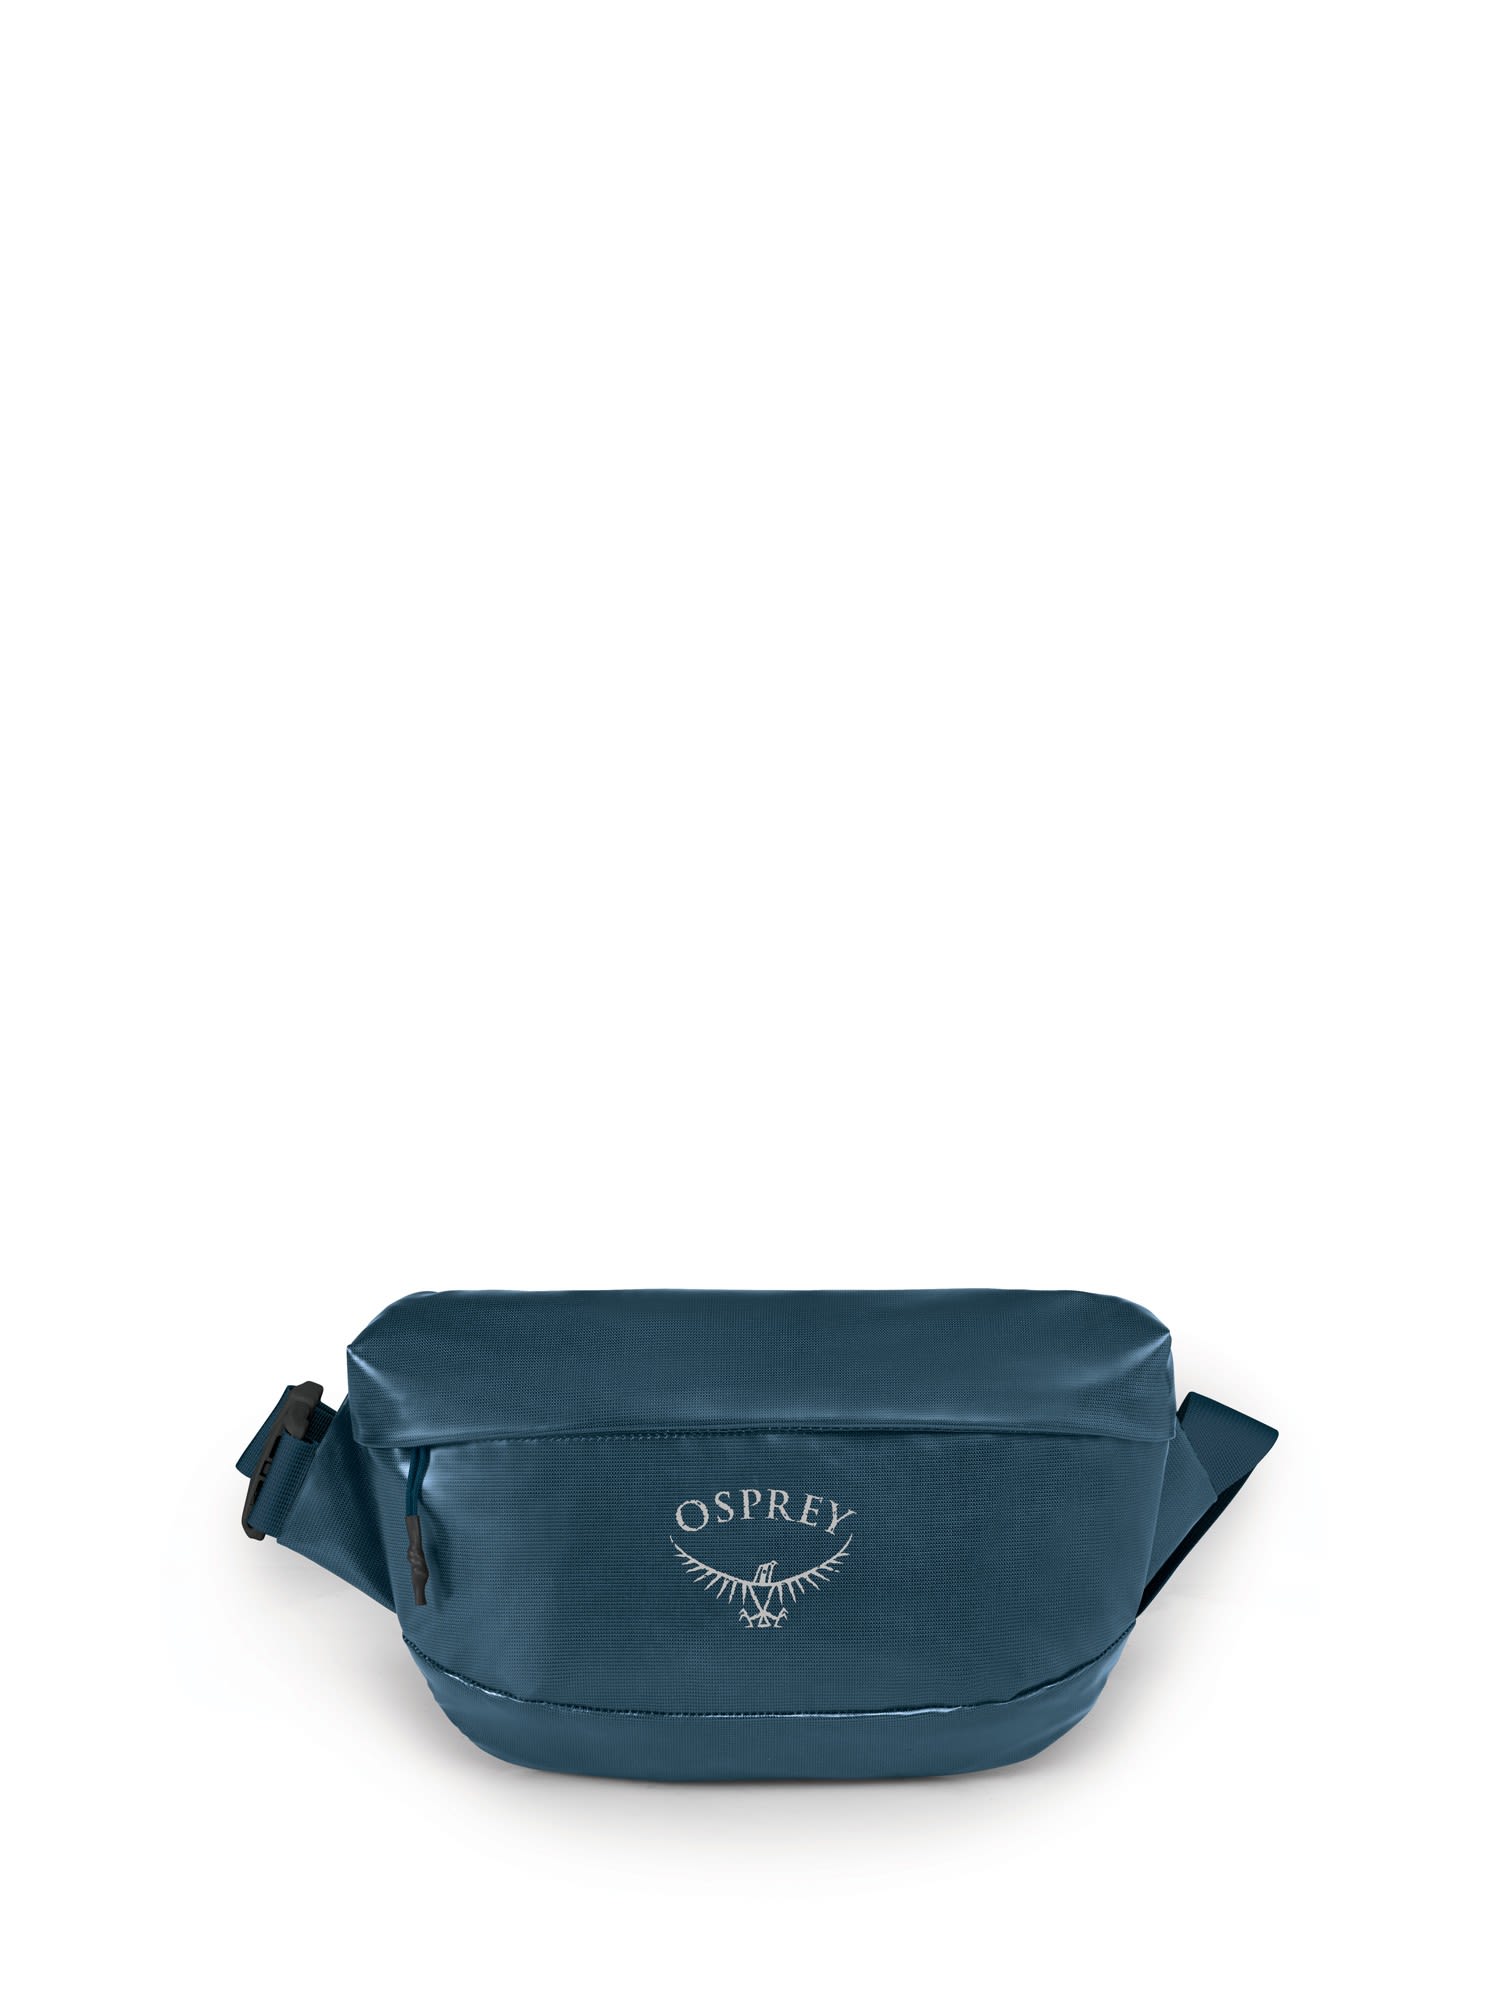 Osprey Transporter Waist Blau- Grtel- und Hfttaschen- Grsse 1l - Farbe Venturi Blue